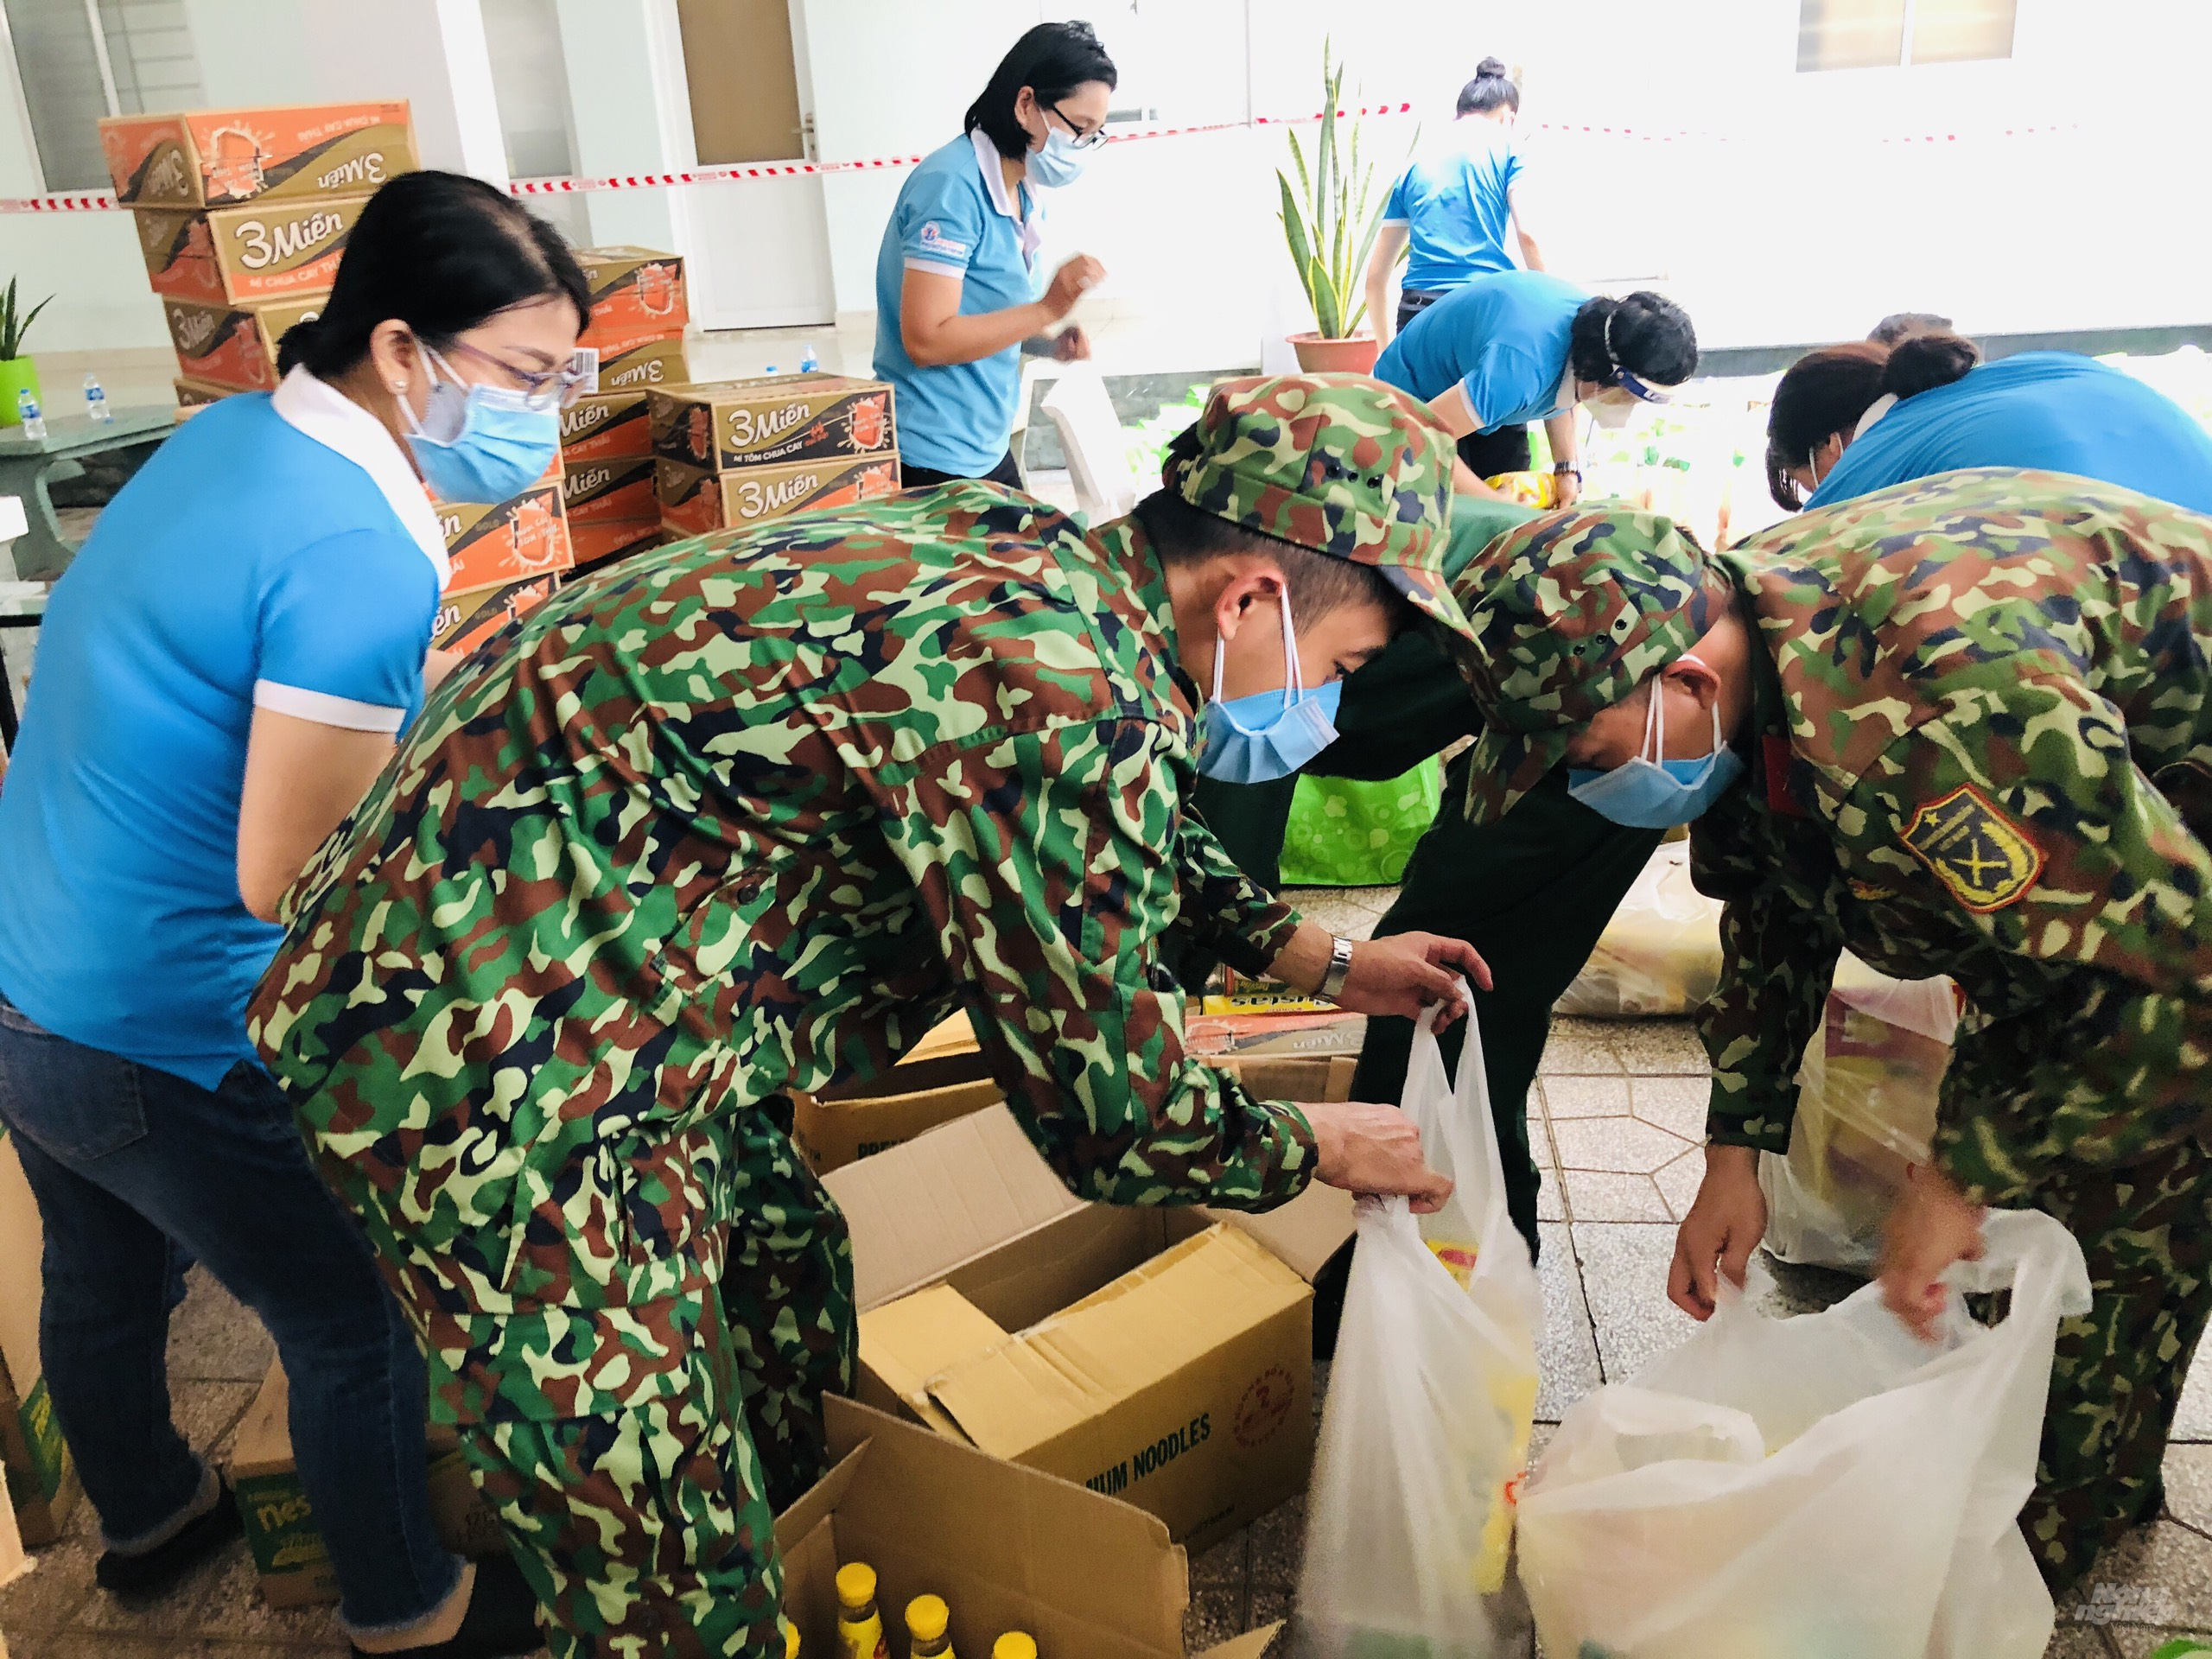  Lực lượng quân đội cũng đang có mặt hỗ trợ các doanh nghiệp vận chuyển hàng thực phẩm cho người lao động và người dân trong mùa dịch. Ảnh: Minh Sáng.